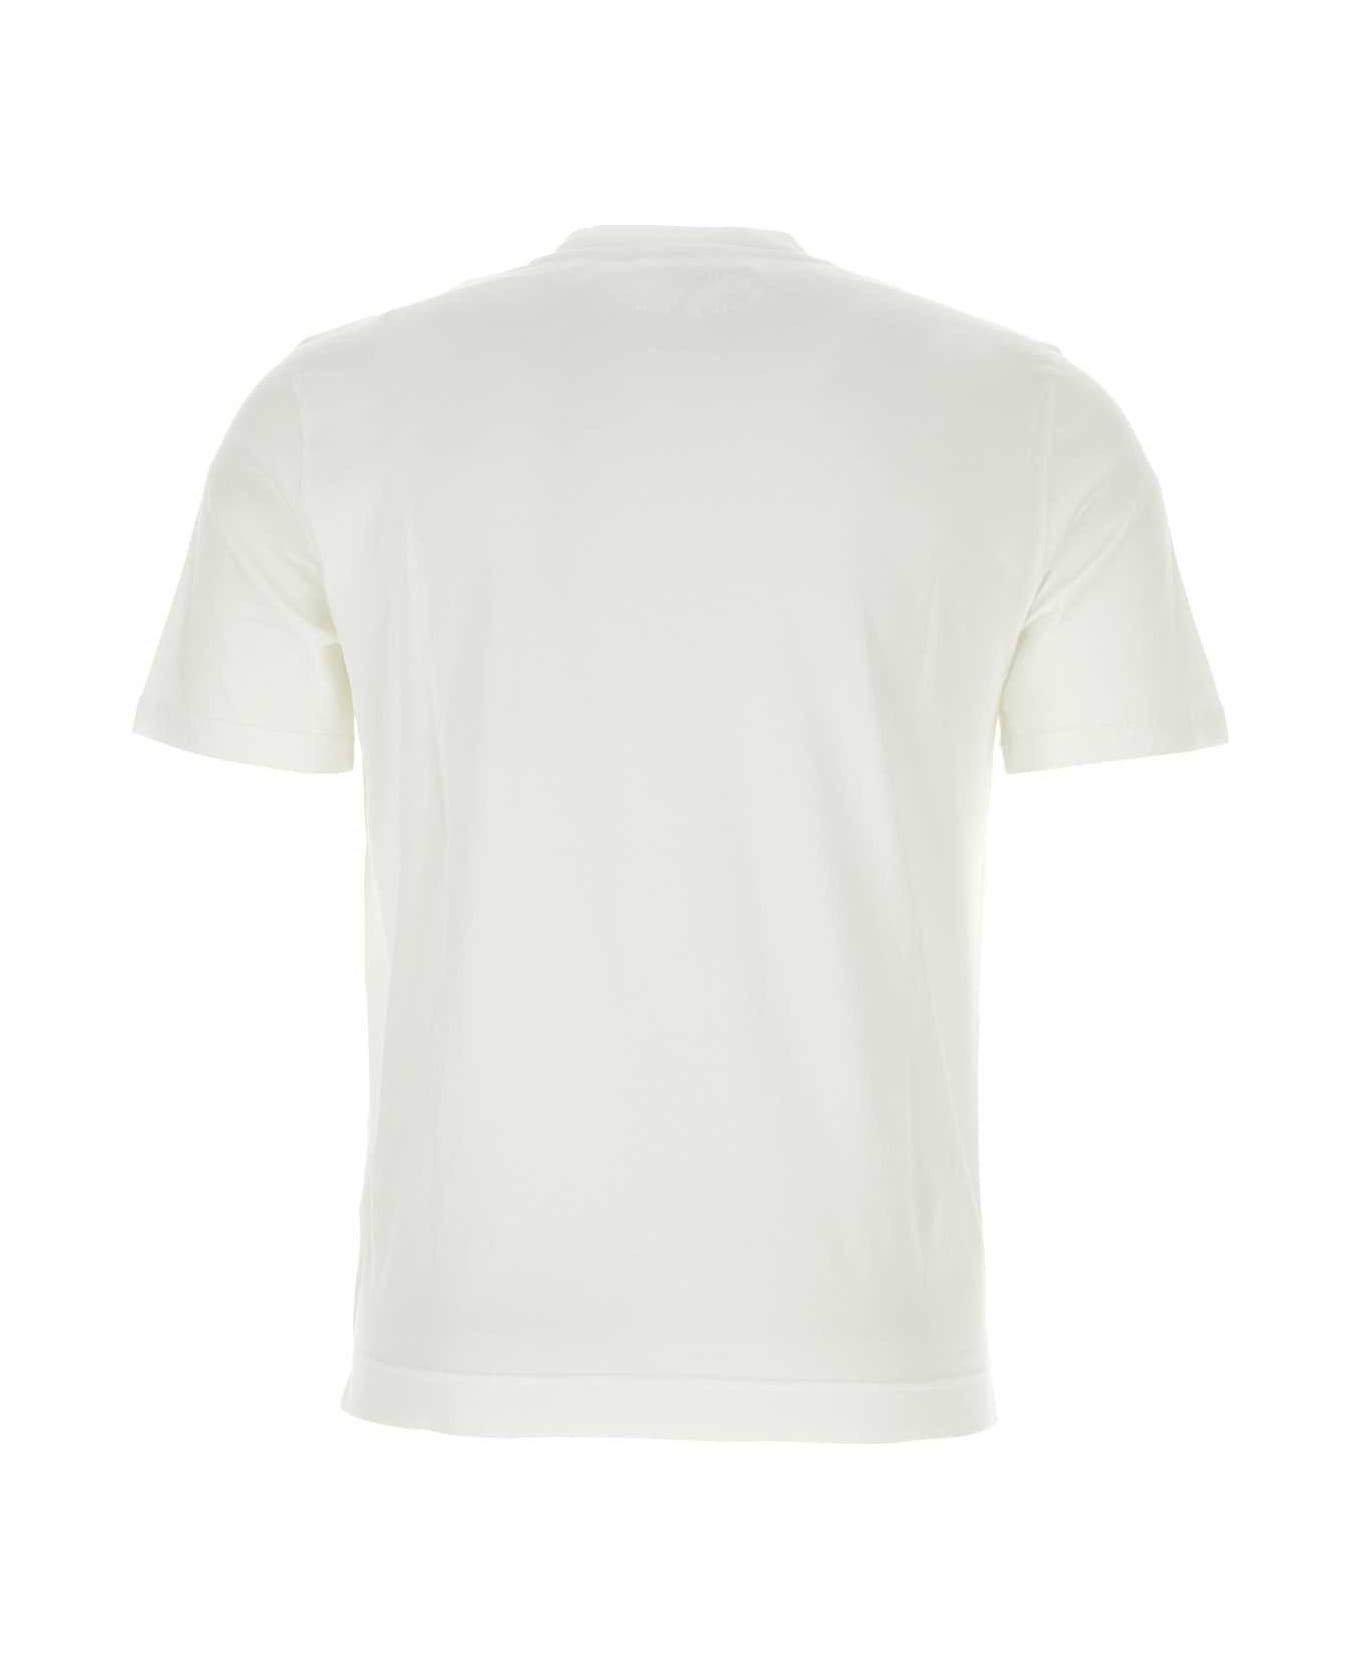 Fedeli White Cotton T-shirt - White シャツ